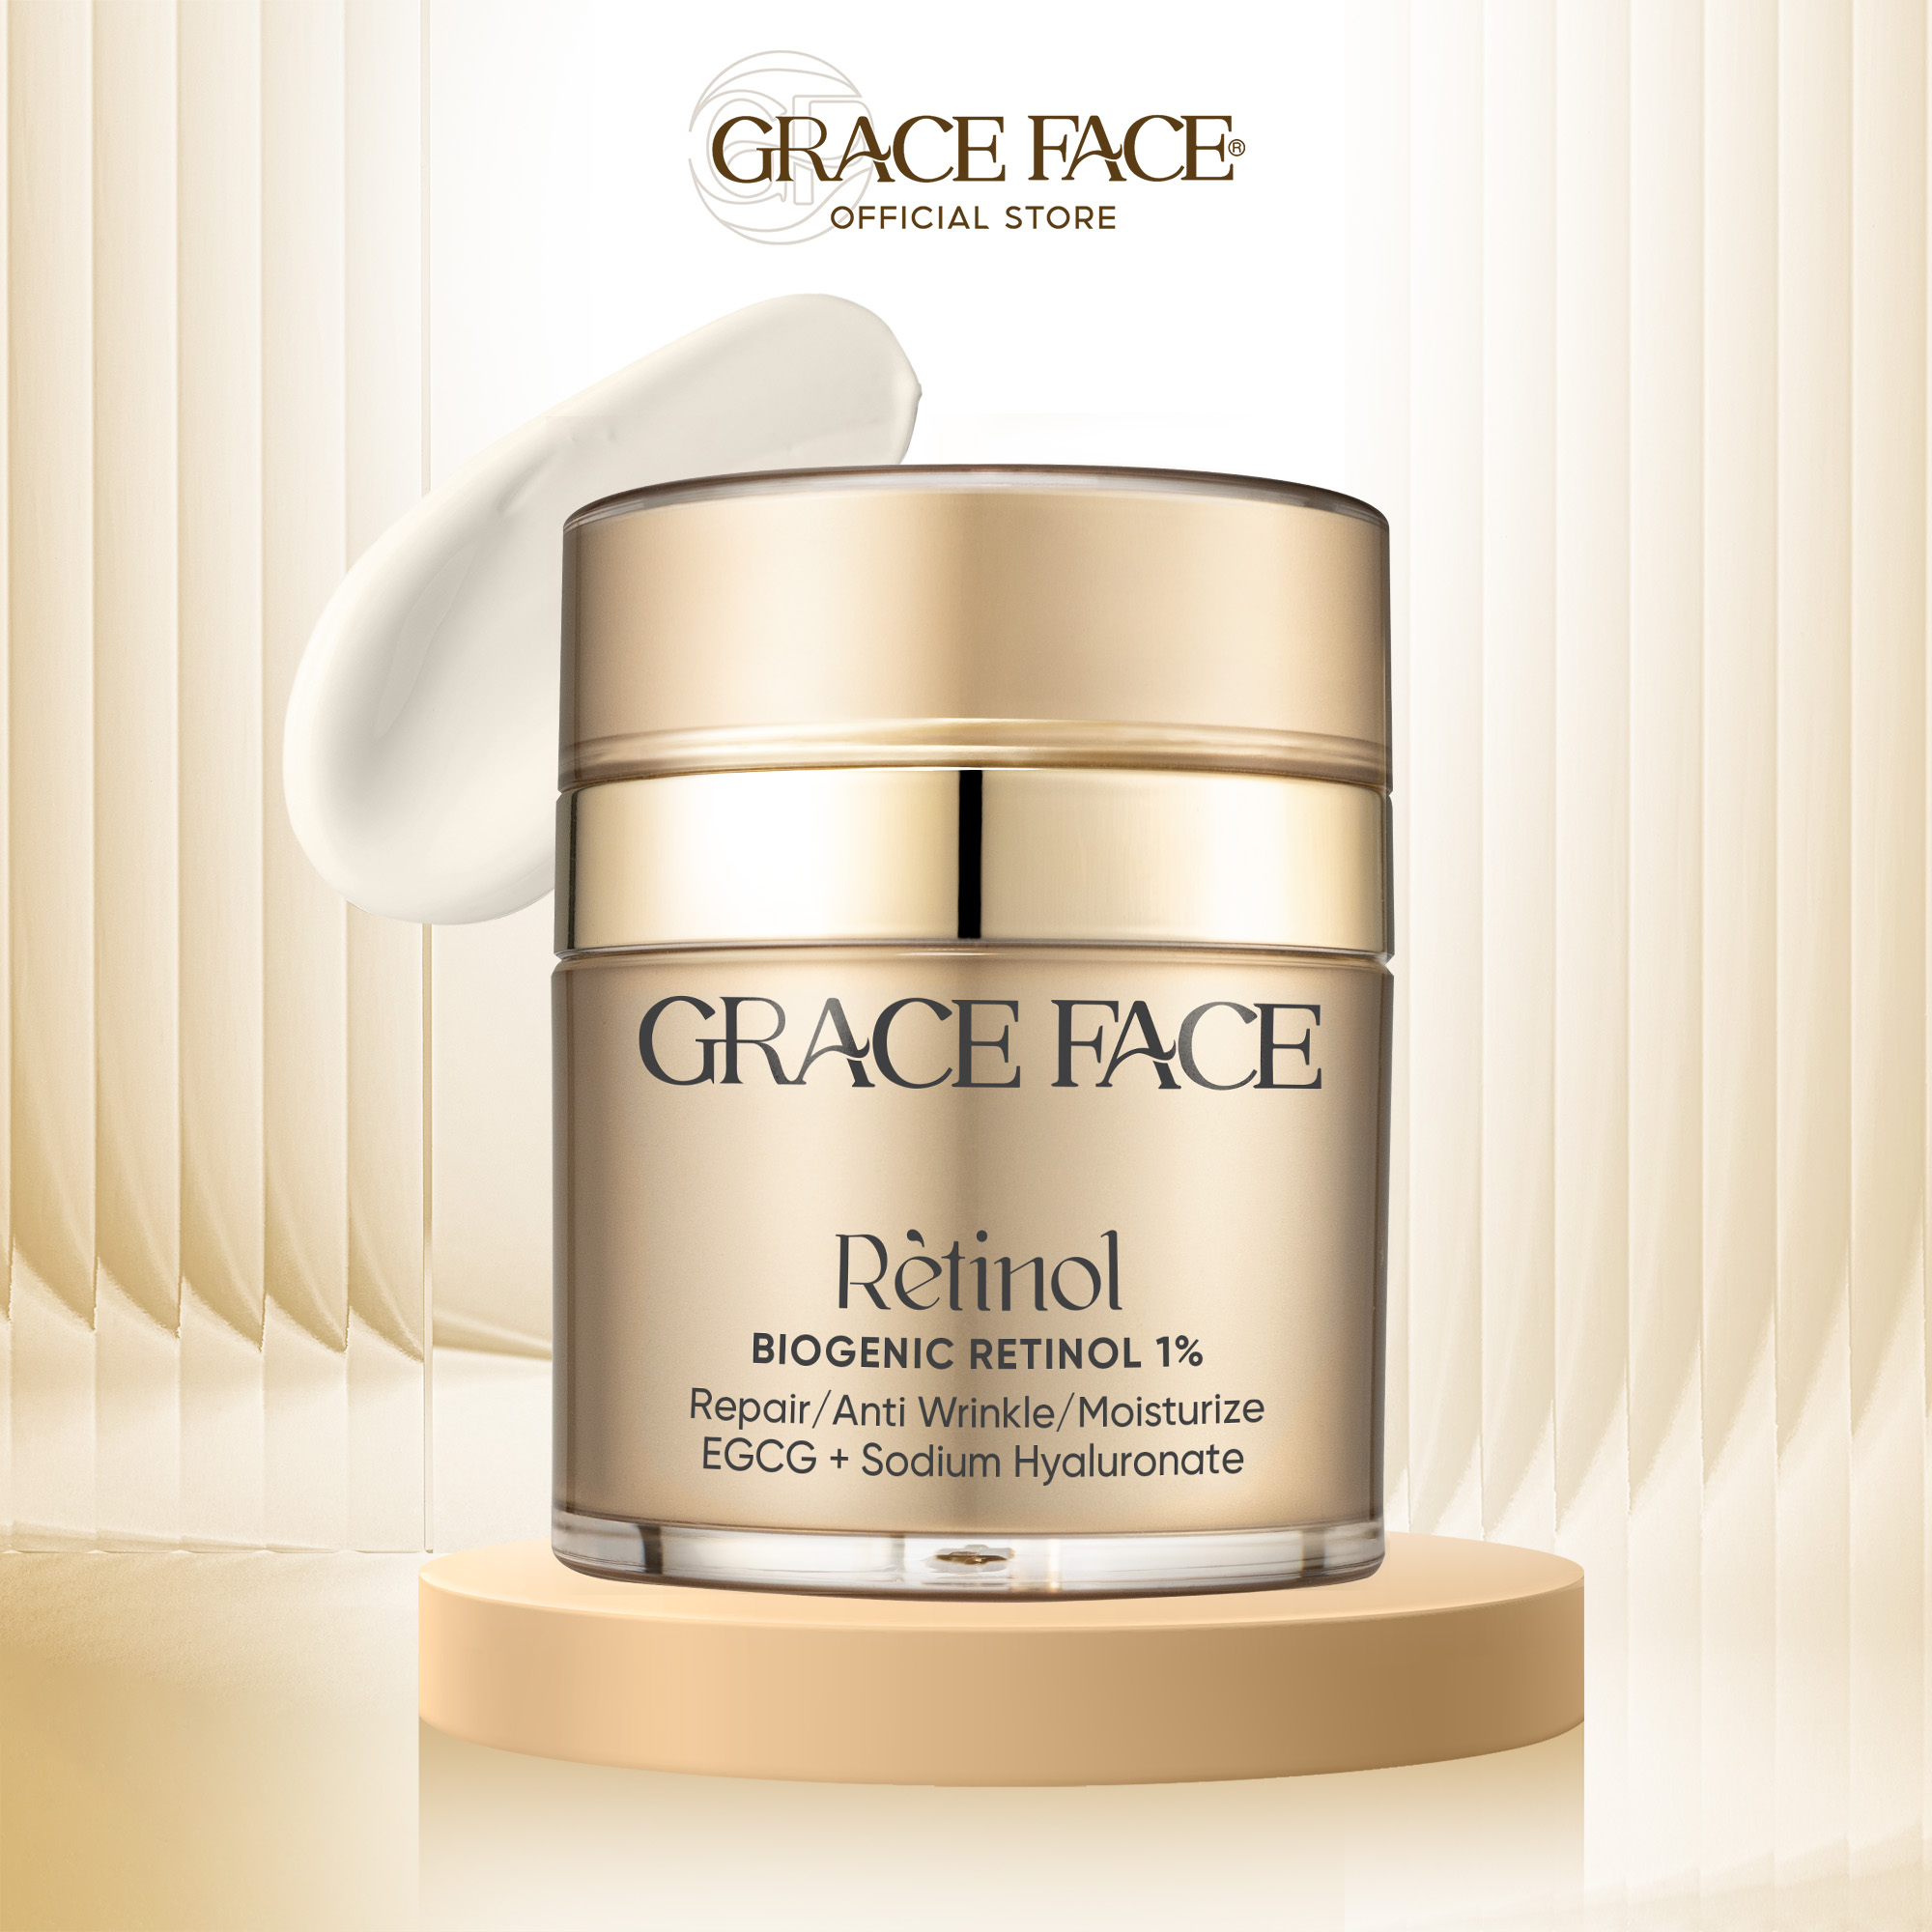 Kem dưỡng trắng giúp ngừa lão hoá da Grace Face Biogenic Retinol 1% 30ml